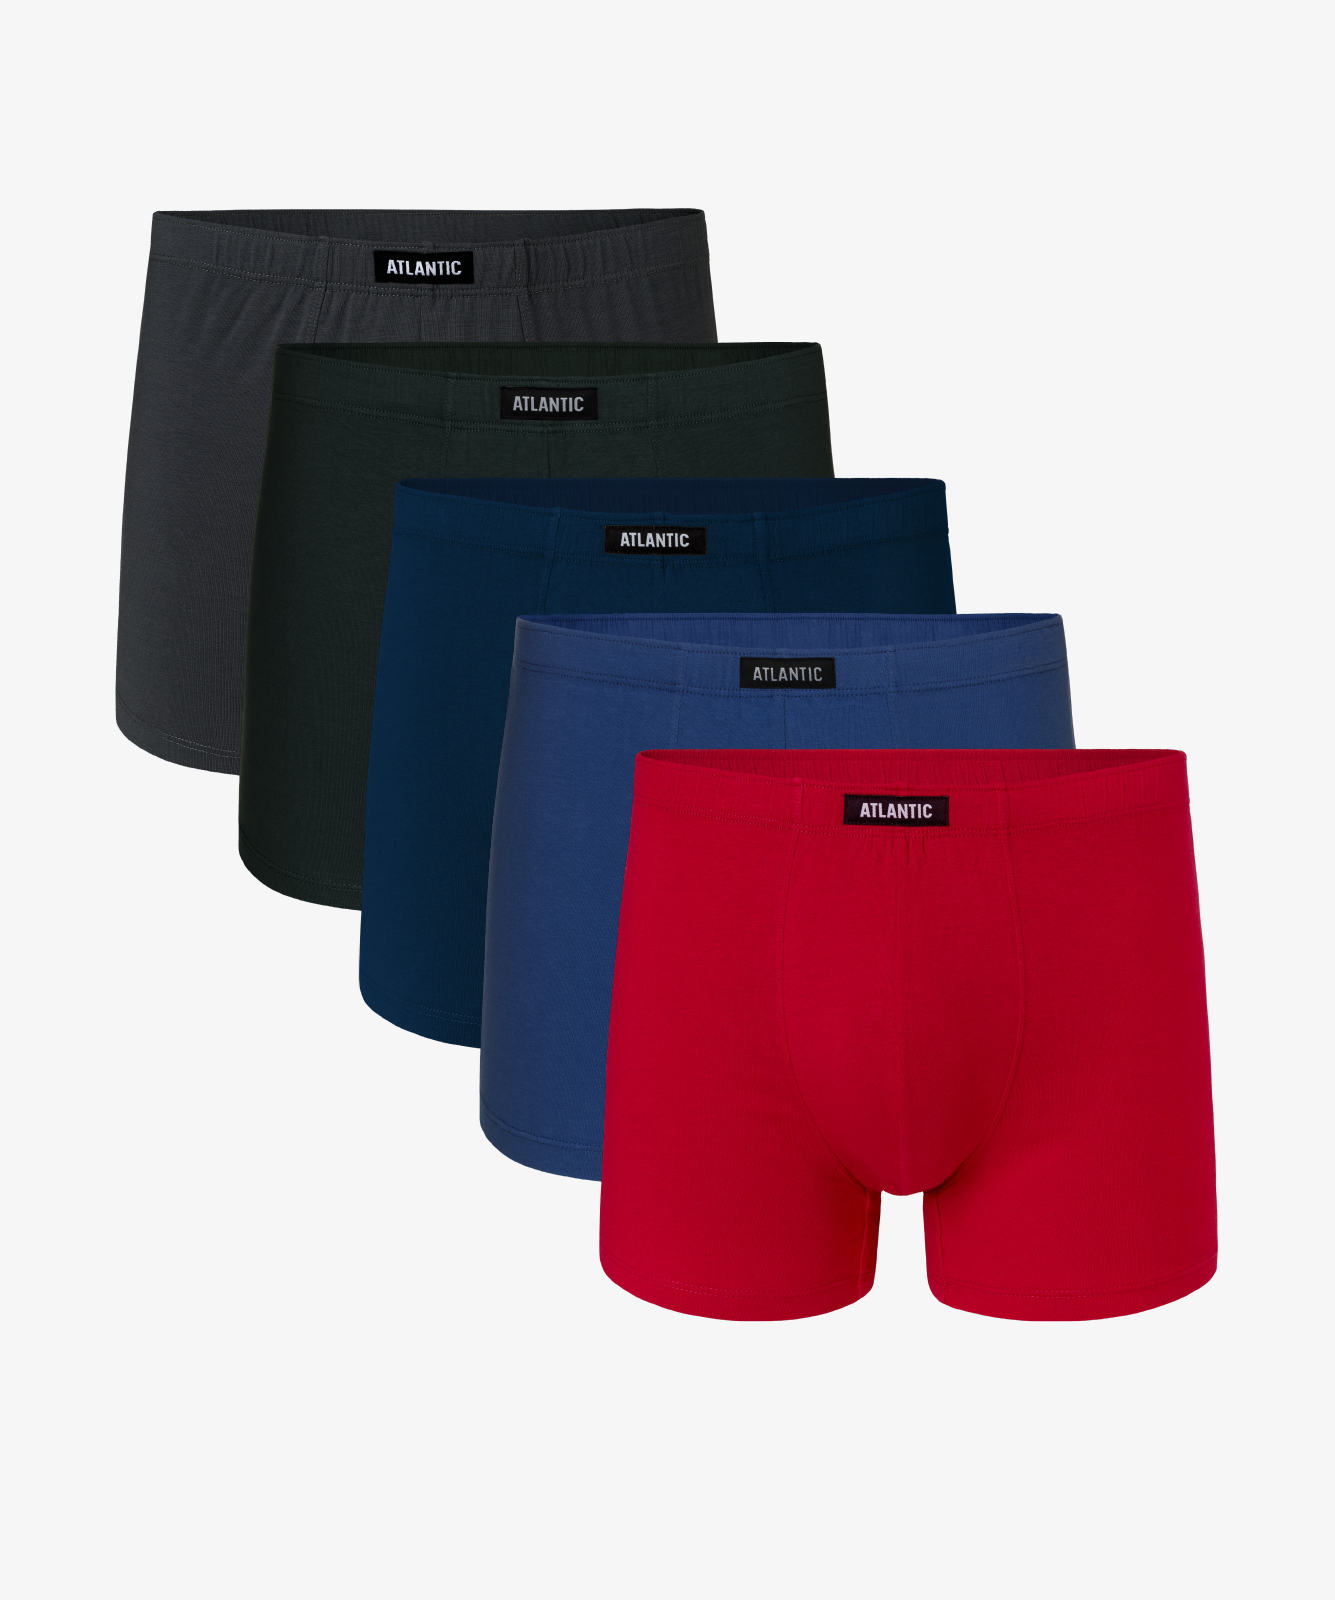 Мужские трусы шорты Atlantic, набор из 5 шт., хлопок, индиго + хаки + красные + голубые + графит, 5SMH-002